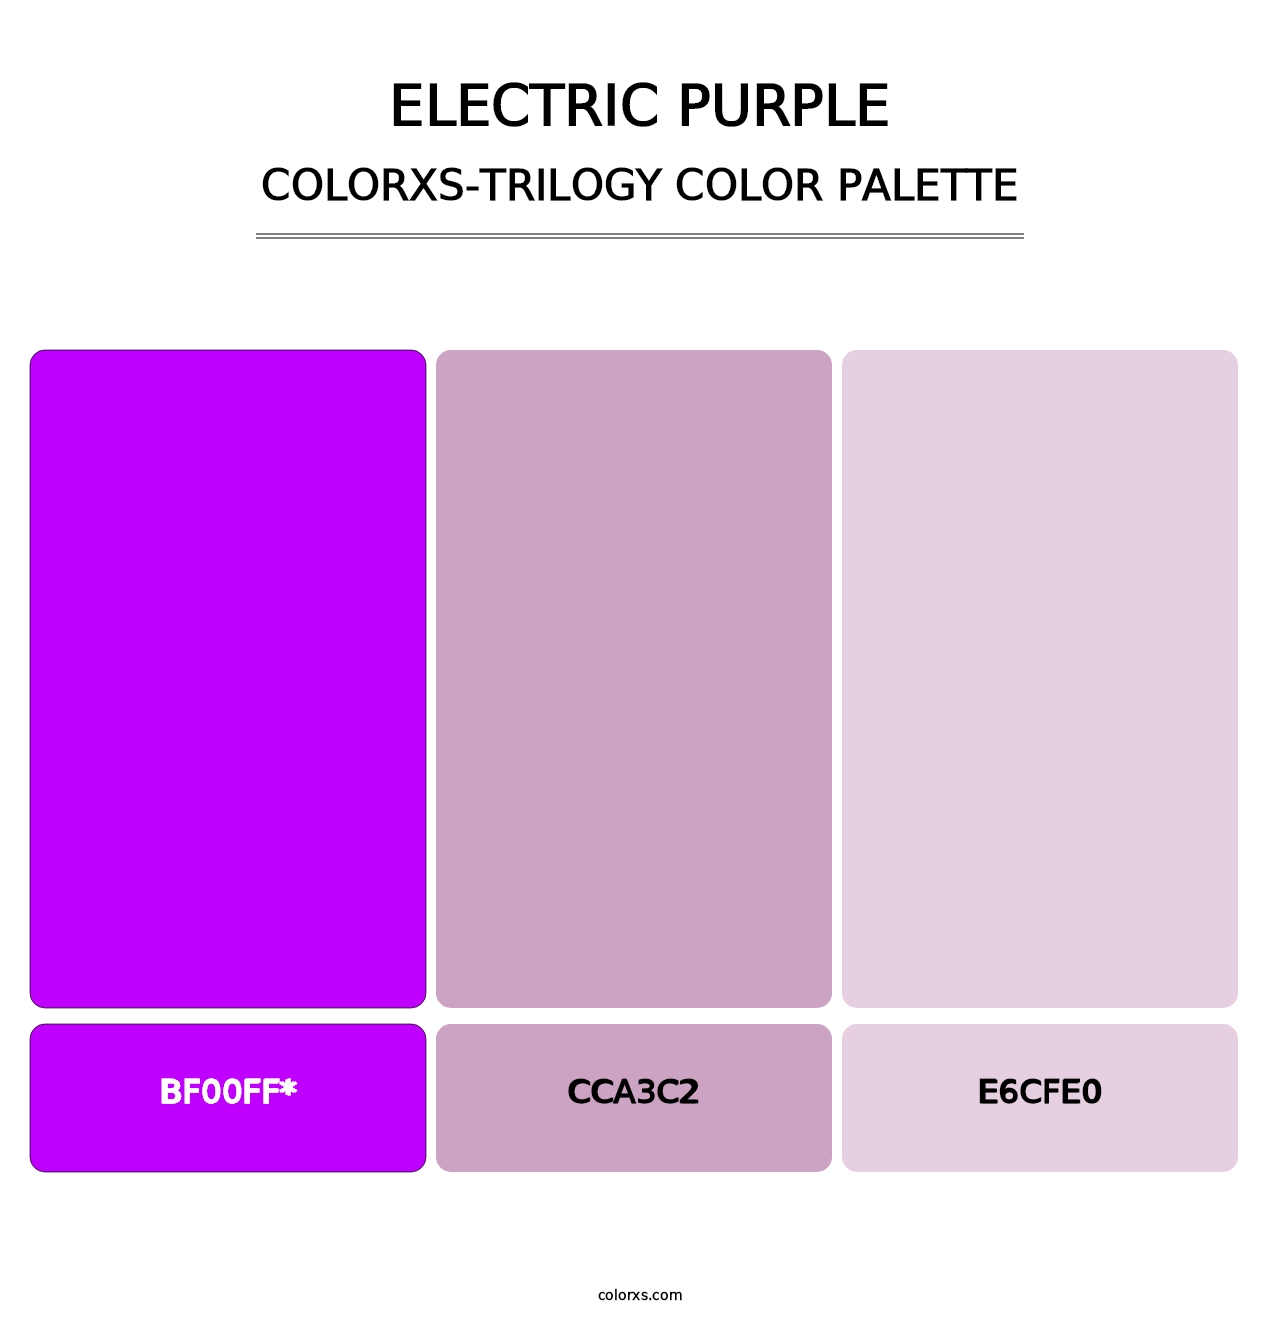 Electric Purple - Colorxs Trilogy Palette